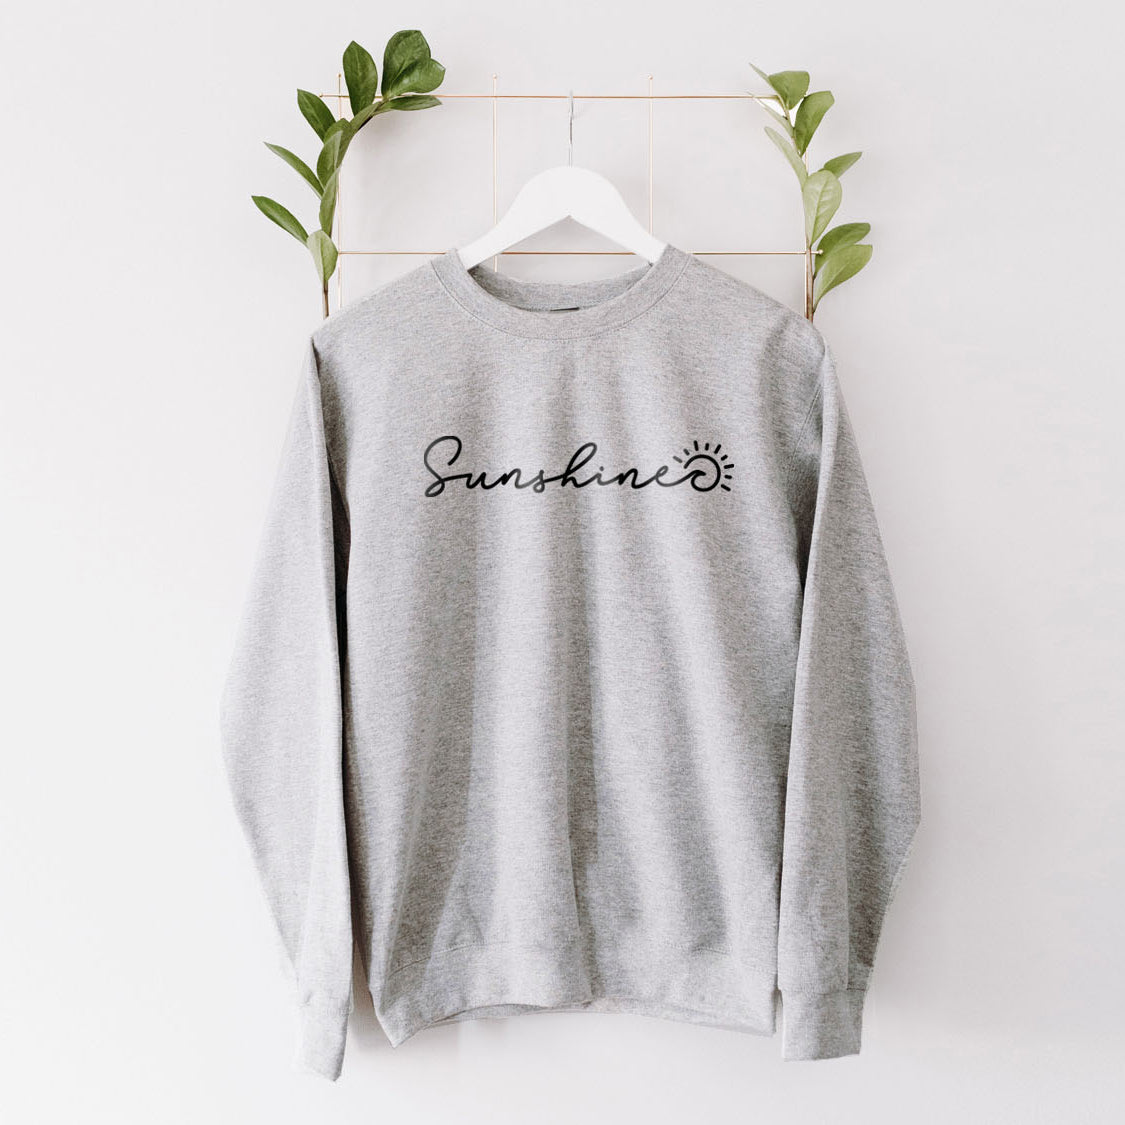 Sunshine Sweatshirt - Beach Vibes California State Minimal Design Printed Sweatshirt